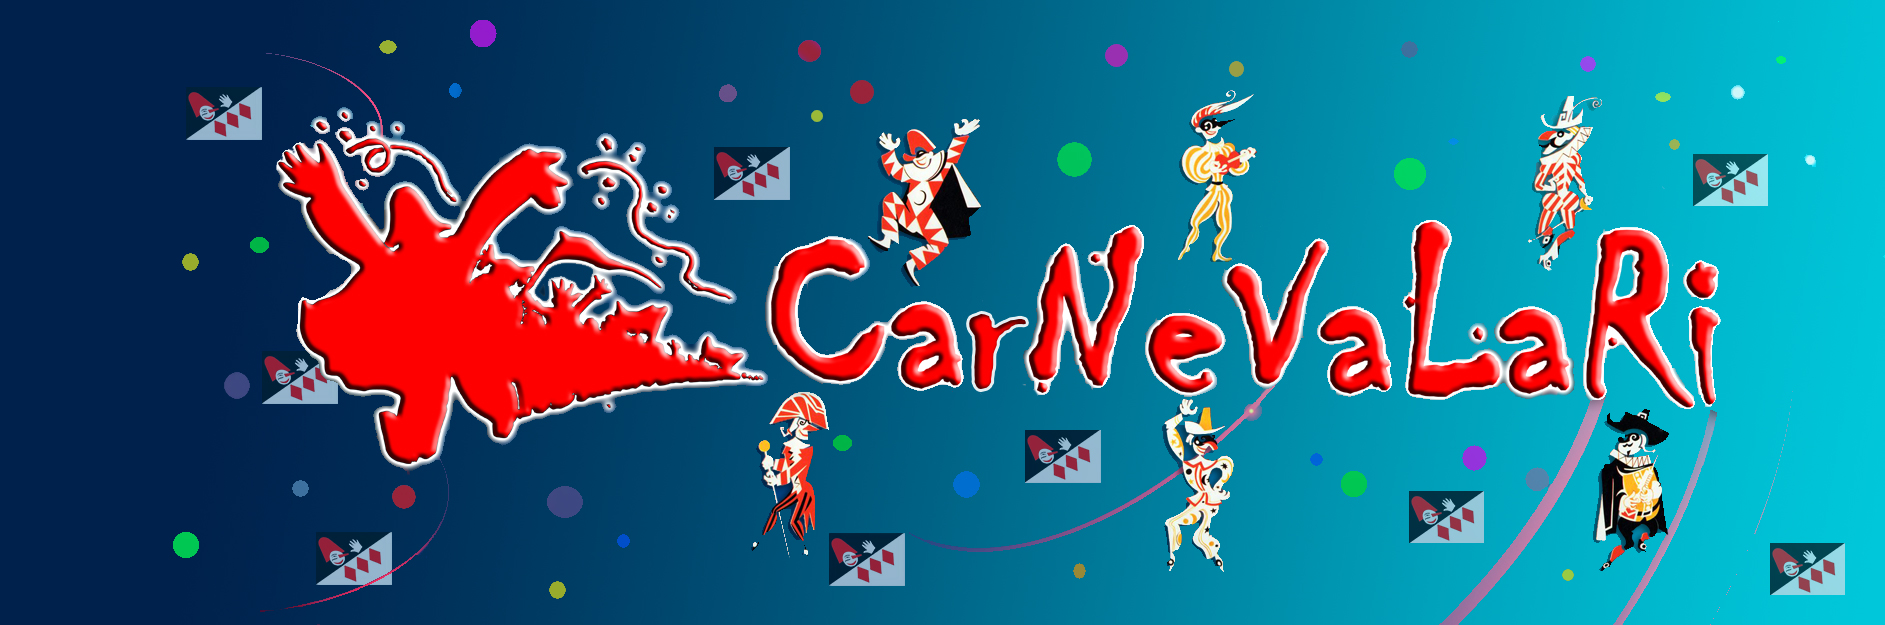 New Carnival Company